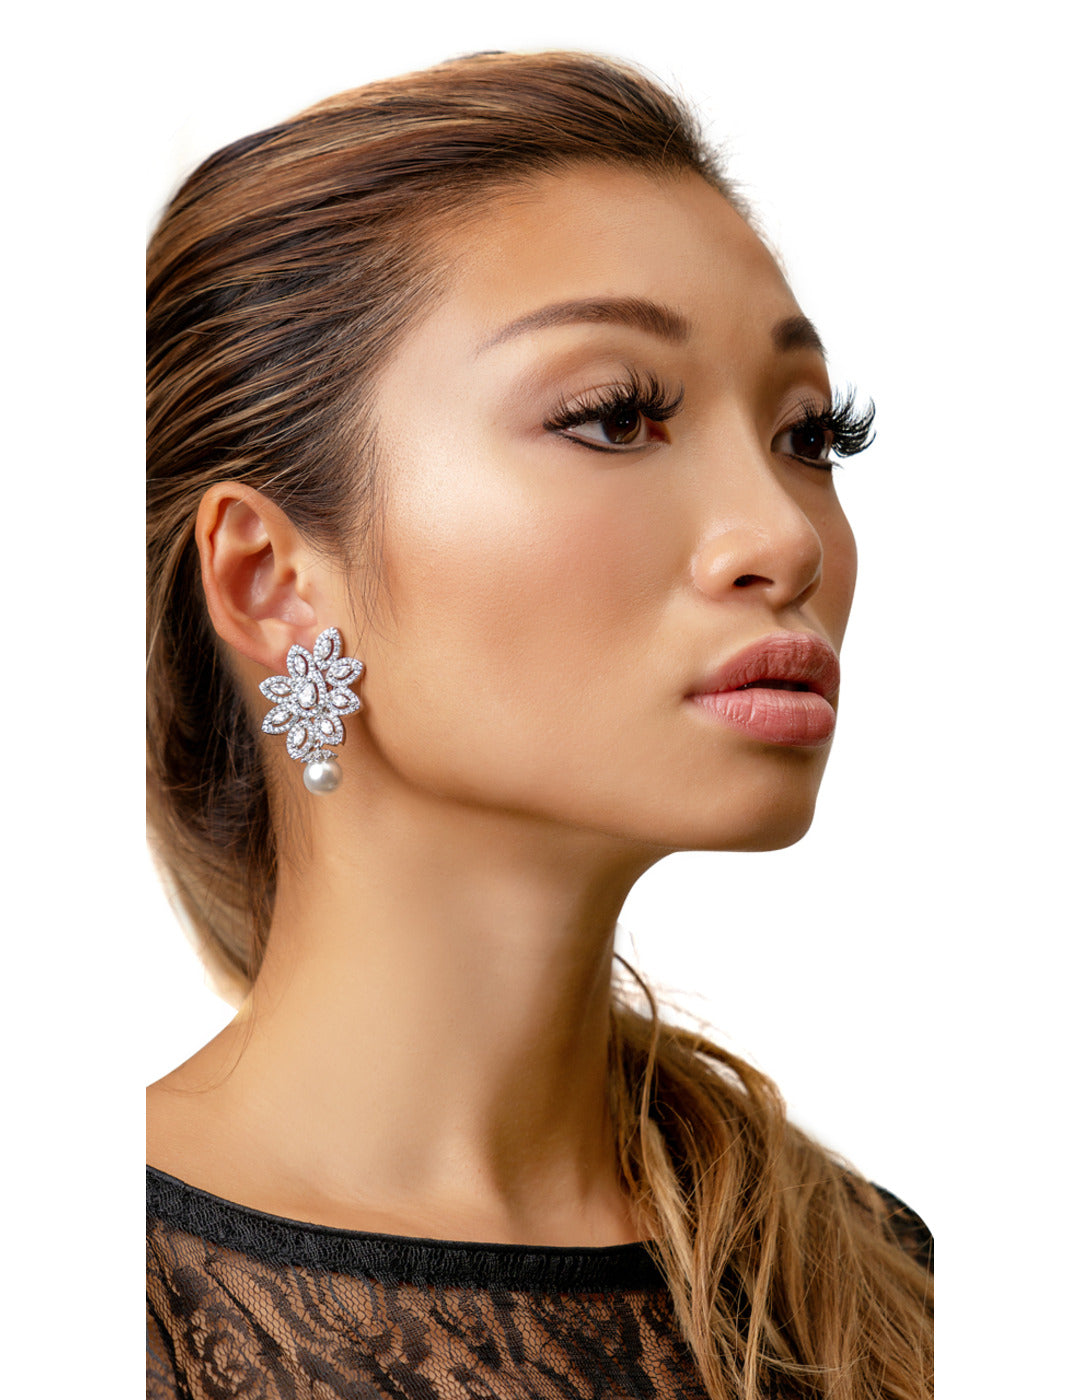 Paisley Faux Diamond Earrings